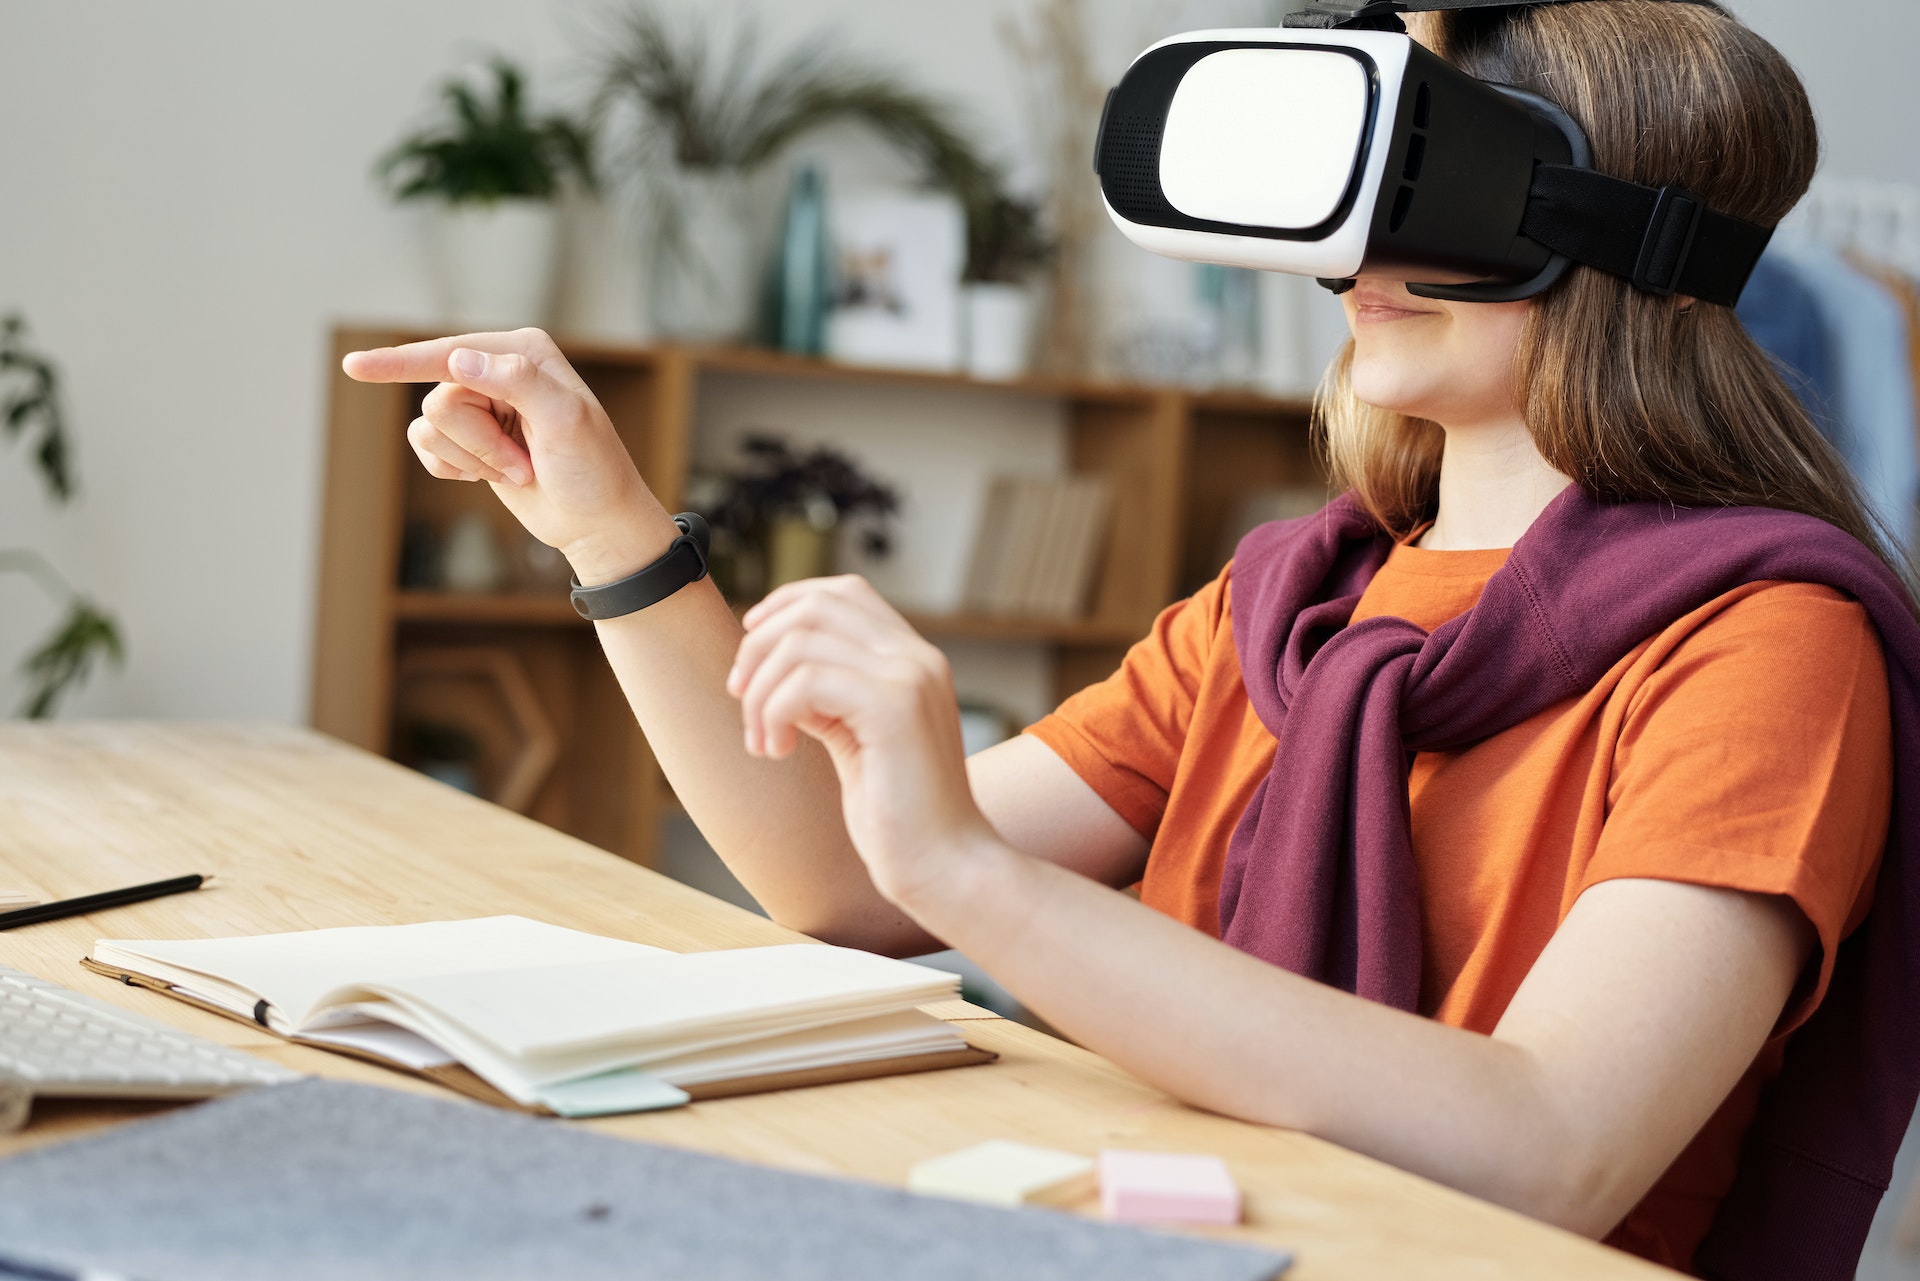 BIldet viser en jente med VR-briller på hodet. Hun sitter ved en pult, smiler og peker i lufta. Jenta har på seg en oransje t-skjorte og en burgunder collegegenser over skuldrene.